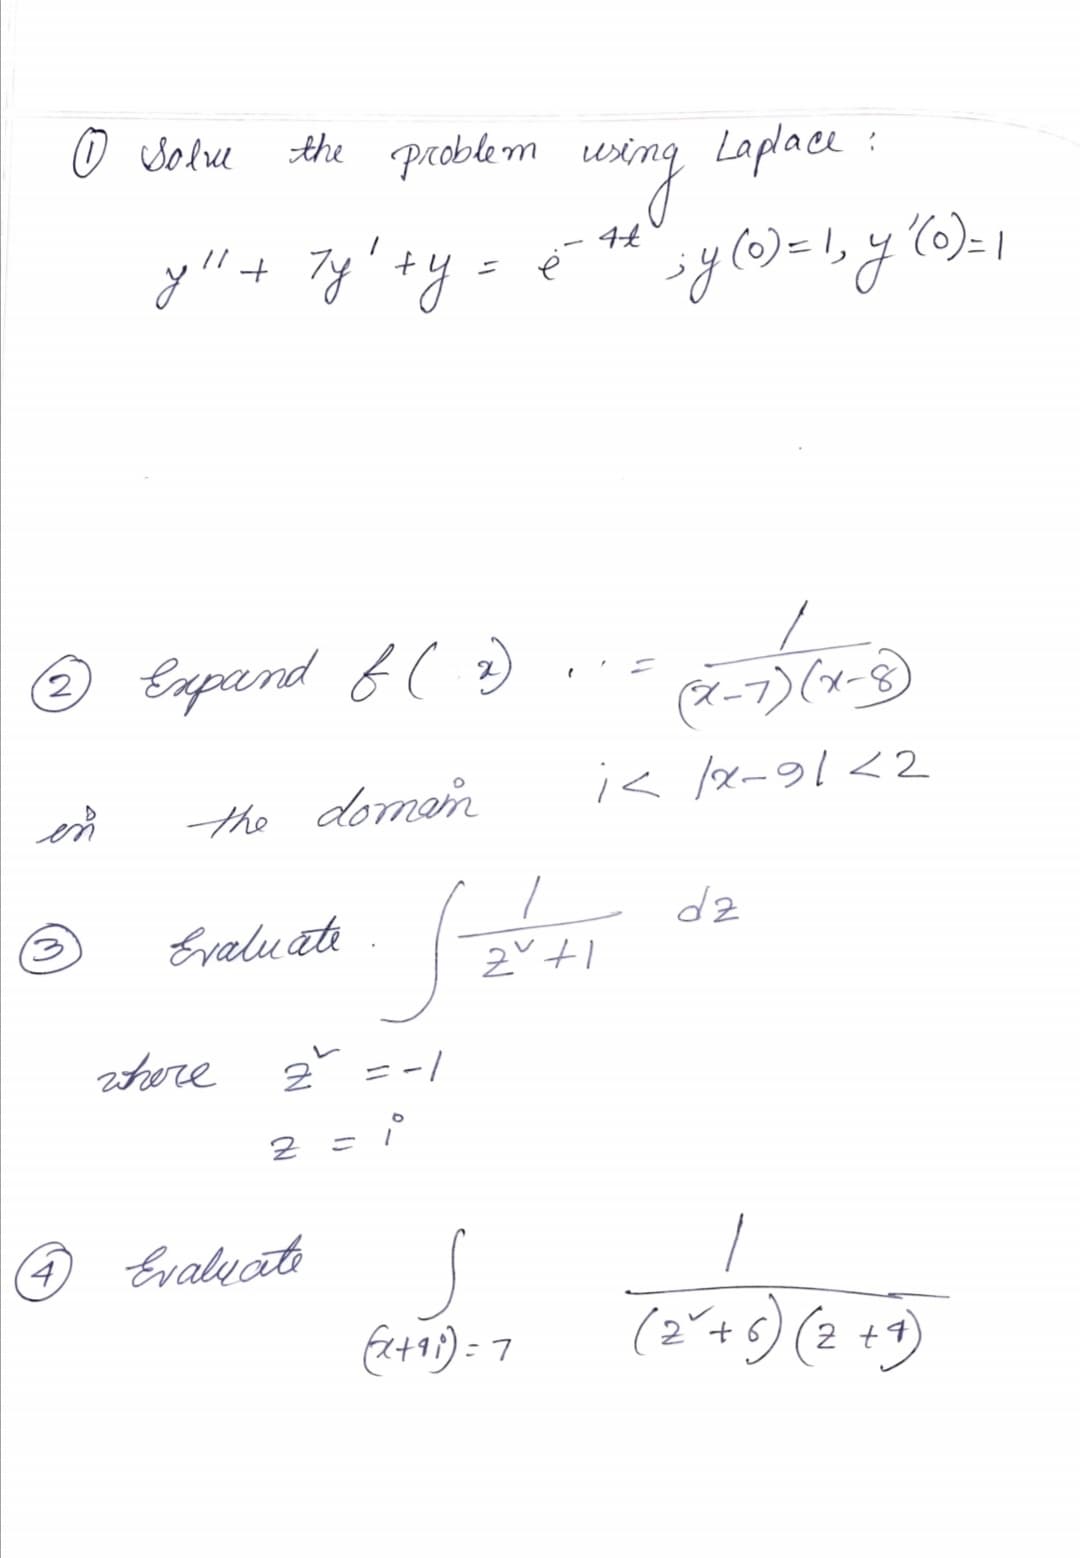 Sole
the problem
Laplace :
()= 1
//
=1,
© Eapand f ( )
(ř-7)(x-8)
The domen
i< /x-91<2
en
dz
Evaluati
stere
2 = -|
(4,
Evalyate
(2+8) (2 +)
